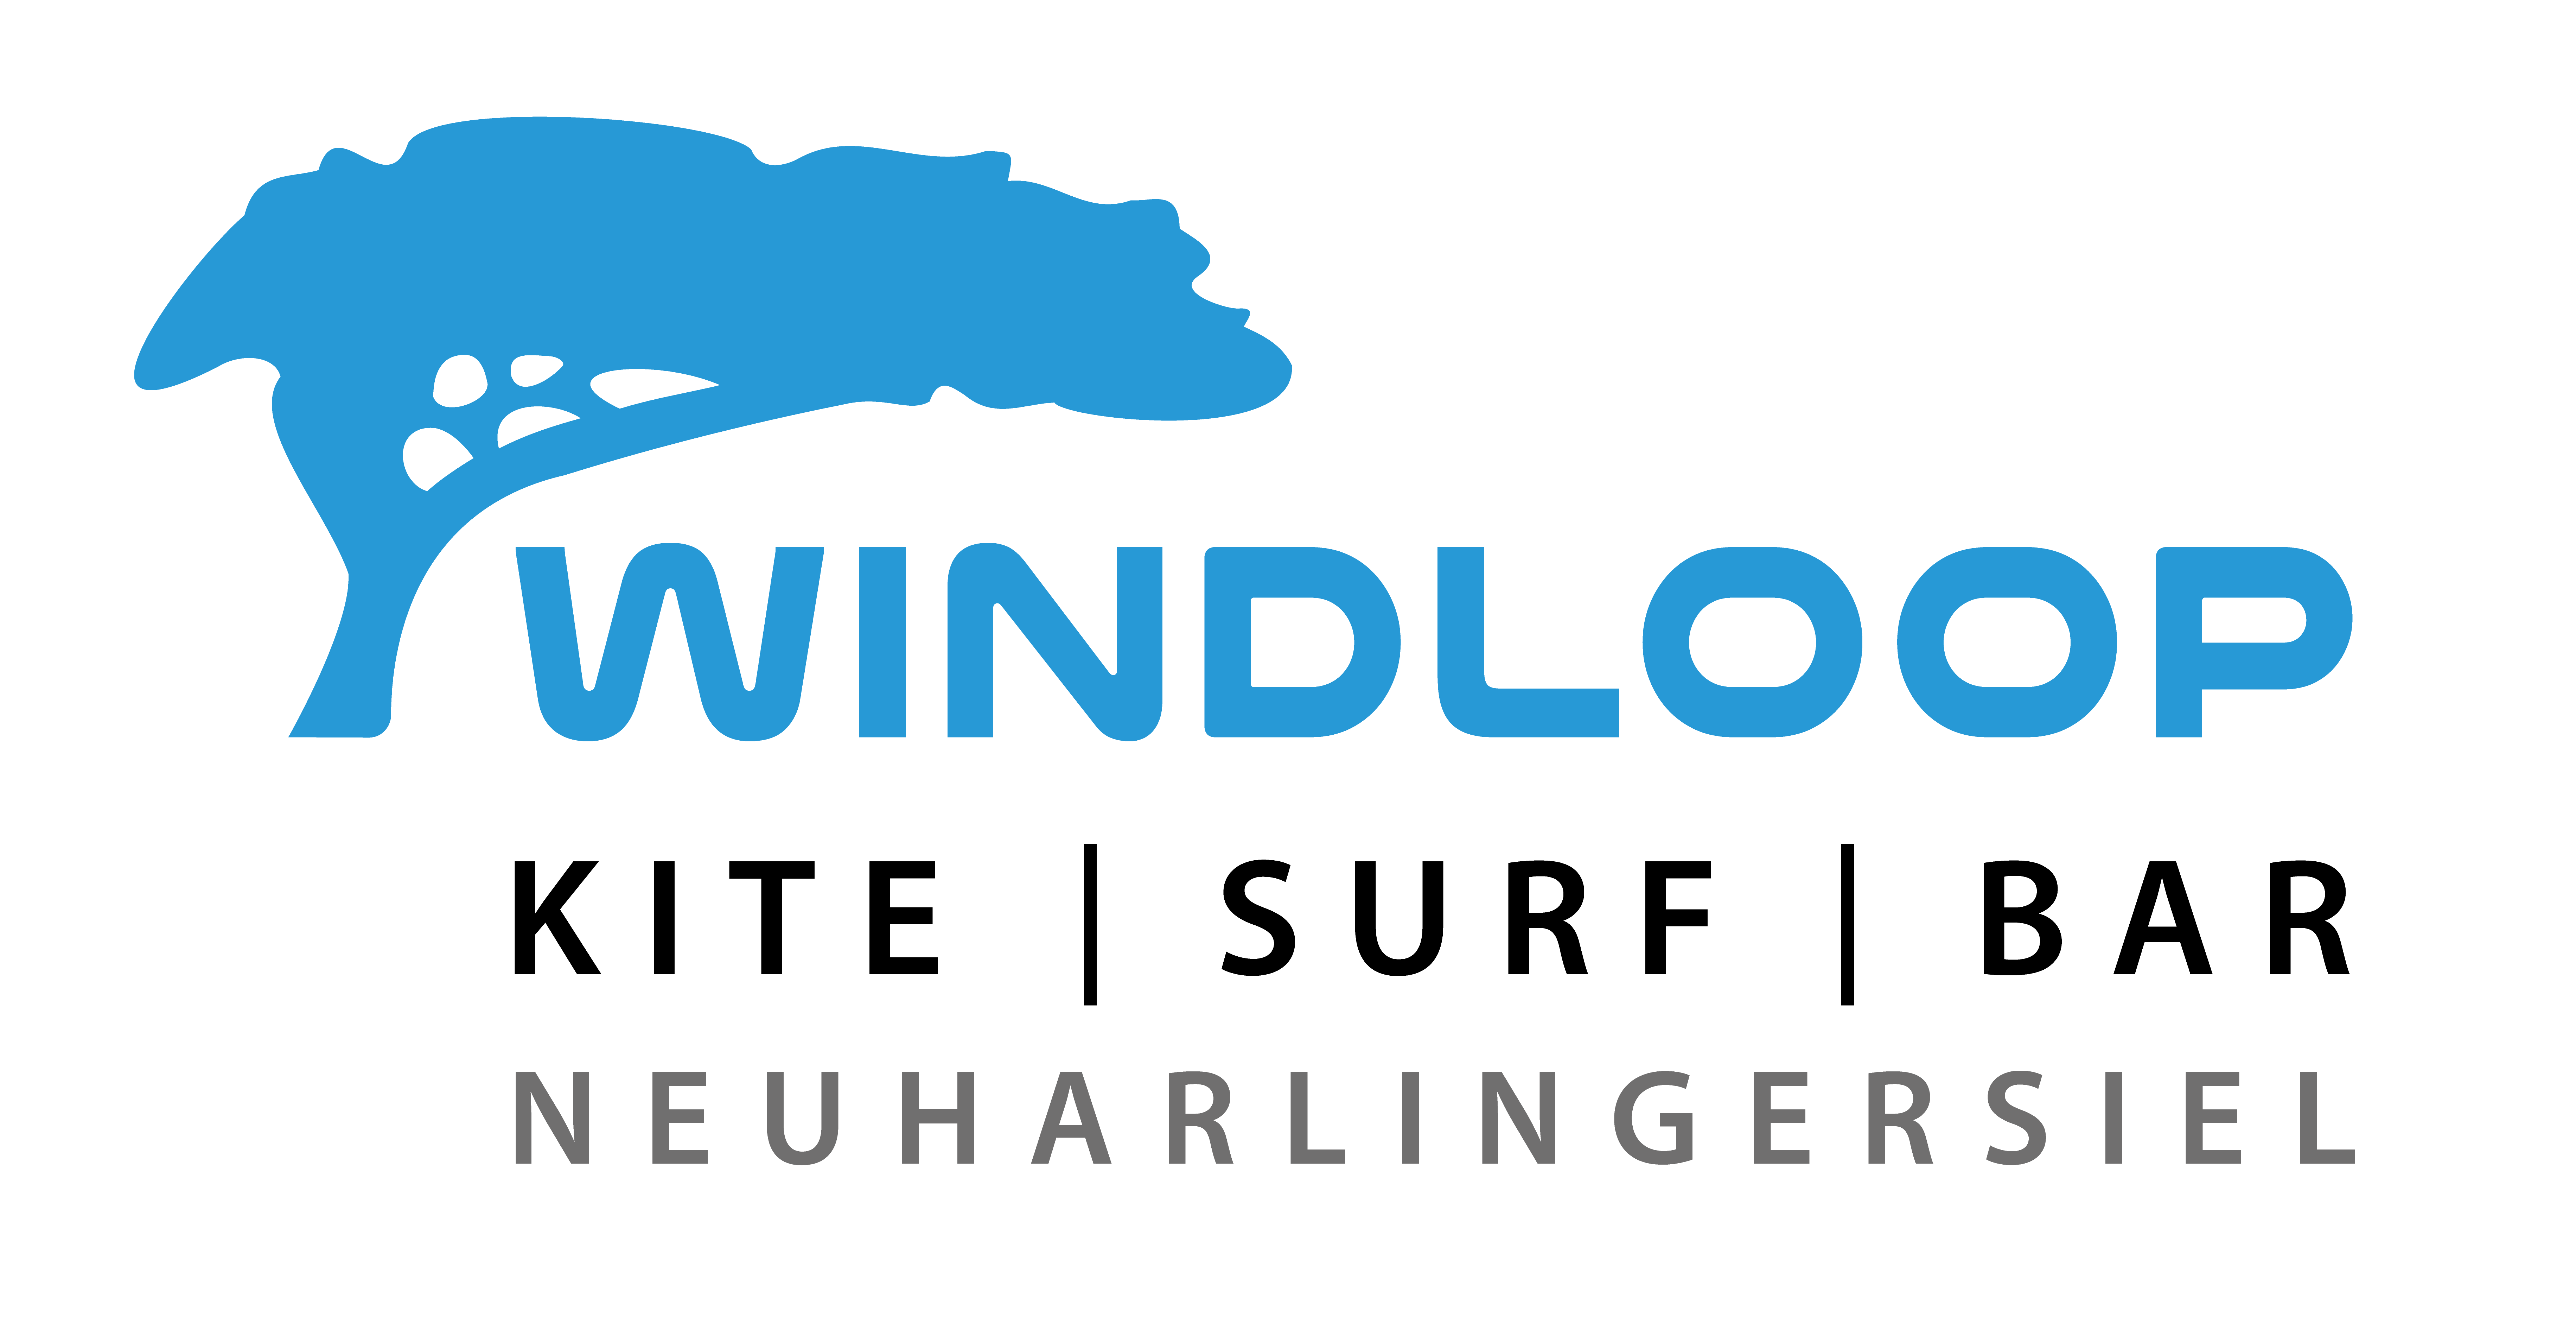 Windloop Neuharlingersiel